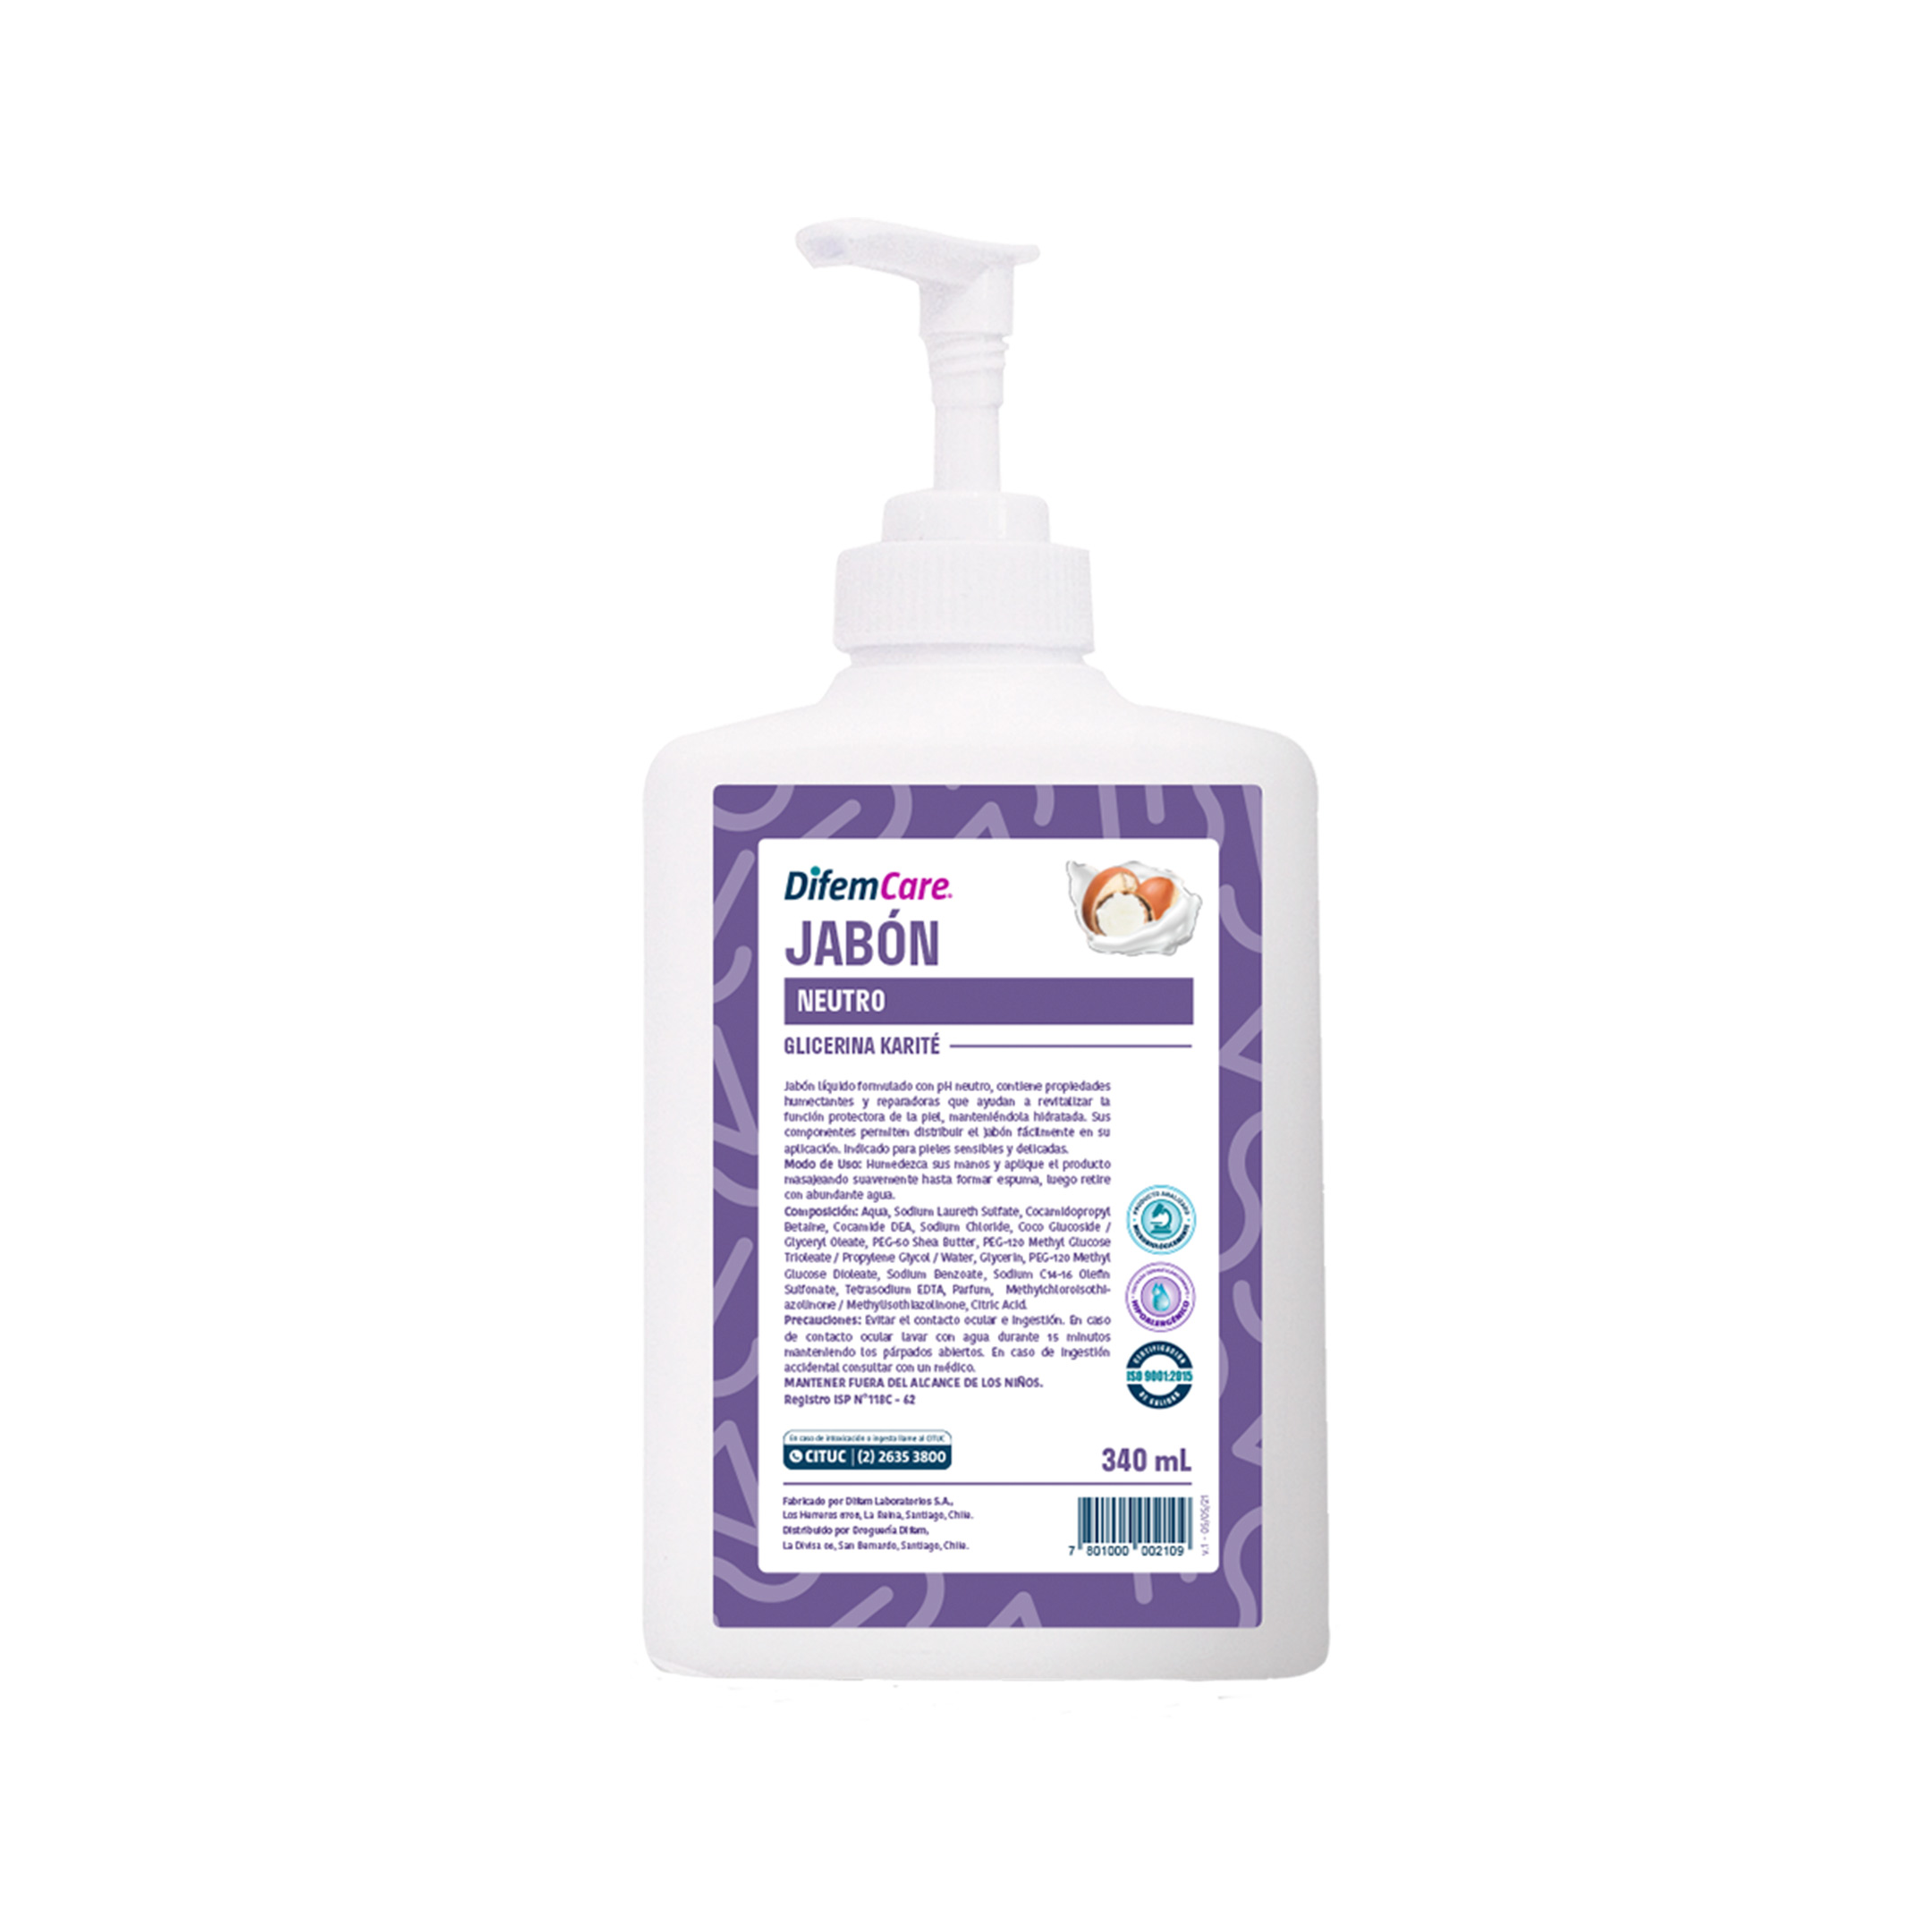 Jabón líquido con pH neutro. Posee propiedades humectantes y reparadoras que ayudan a revitalizar la función protectora de la piel, mateniéndola hidratada. Indicado para pieles sensibles y delicadas.